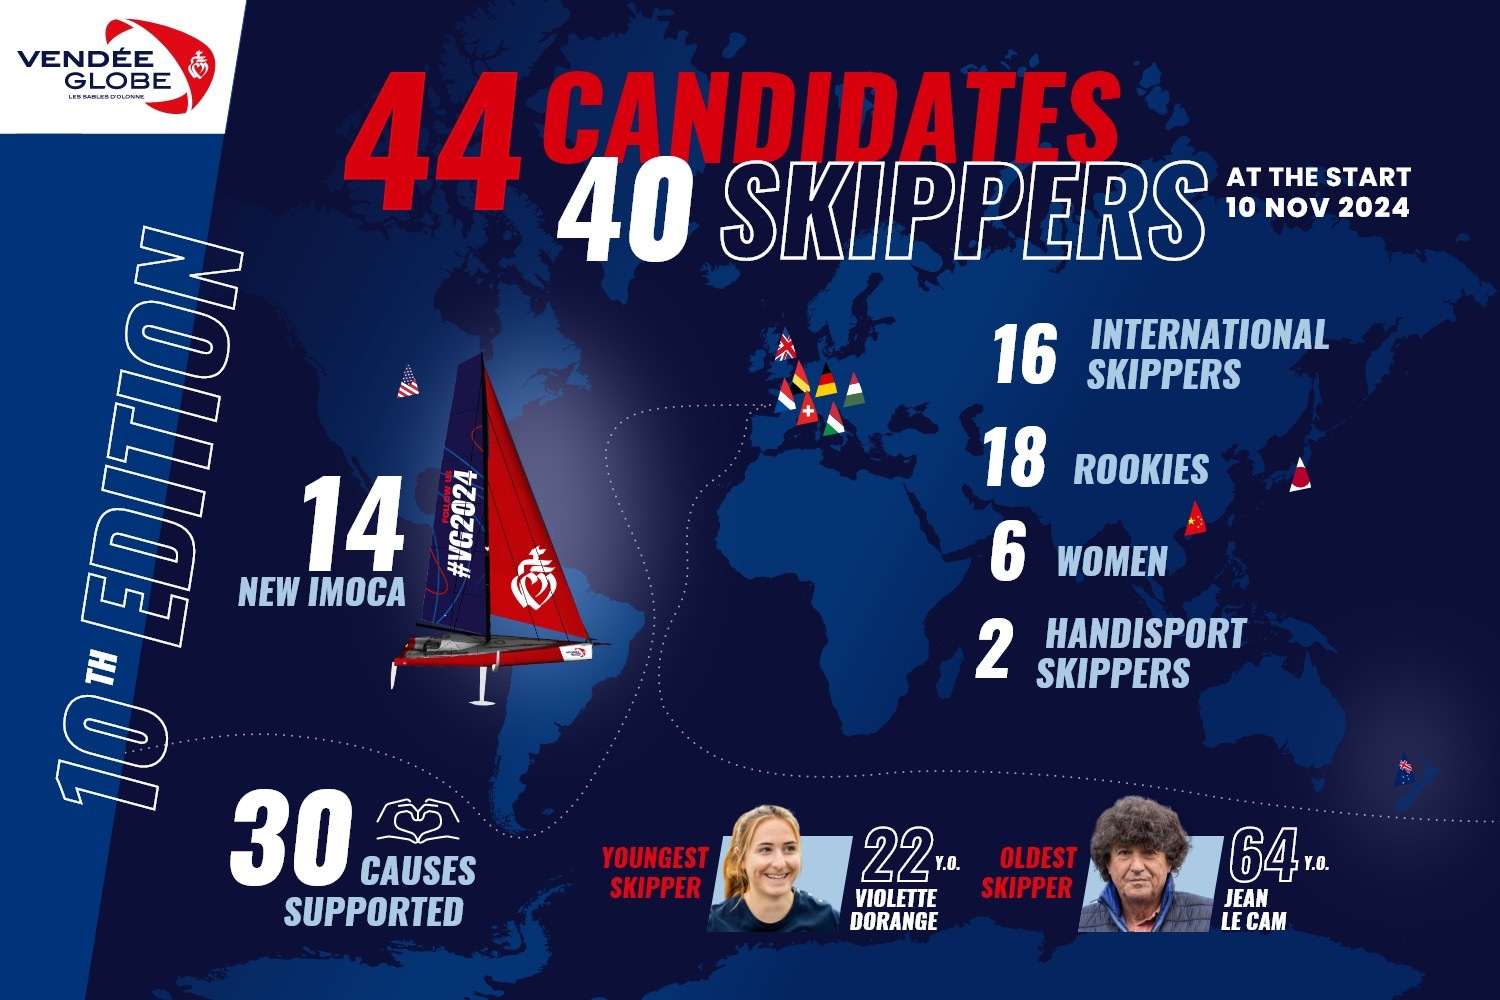 Verso il decimo Vendee Globe: 44 skipper candidati per 40 posti